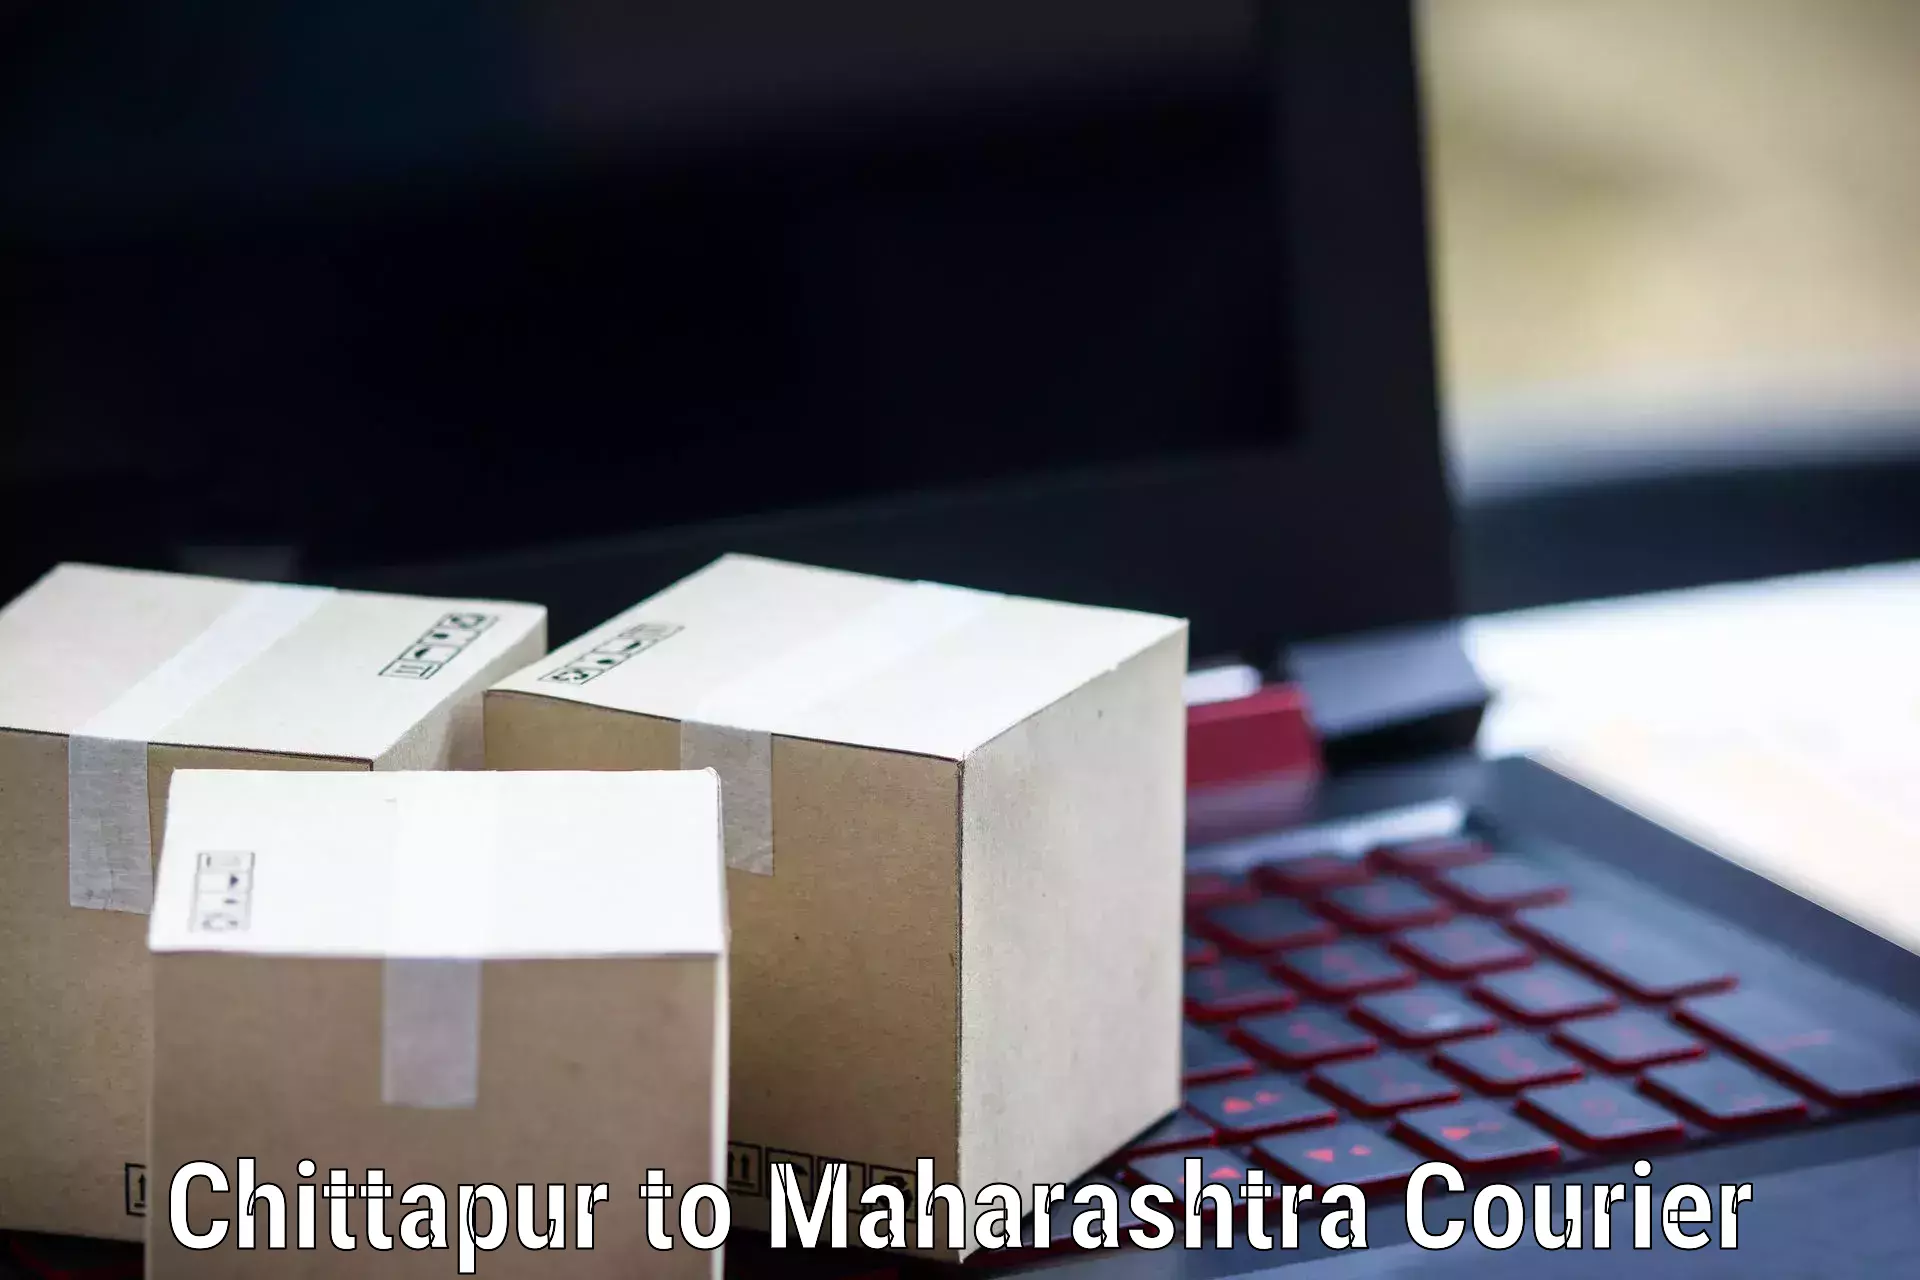 Customer-centric shipping Chittapur to Ulhasnagar